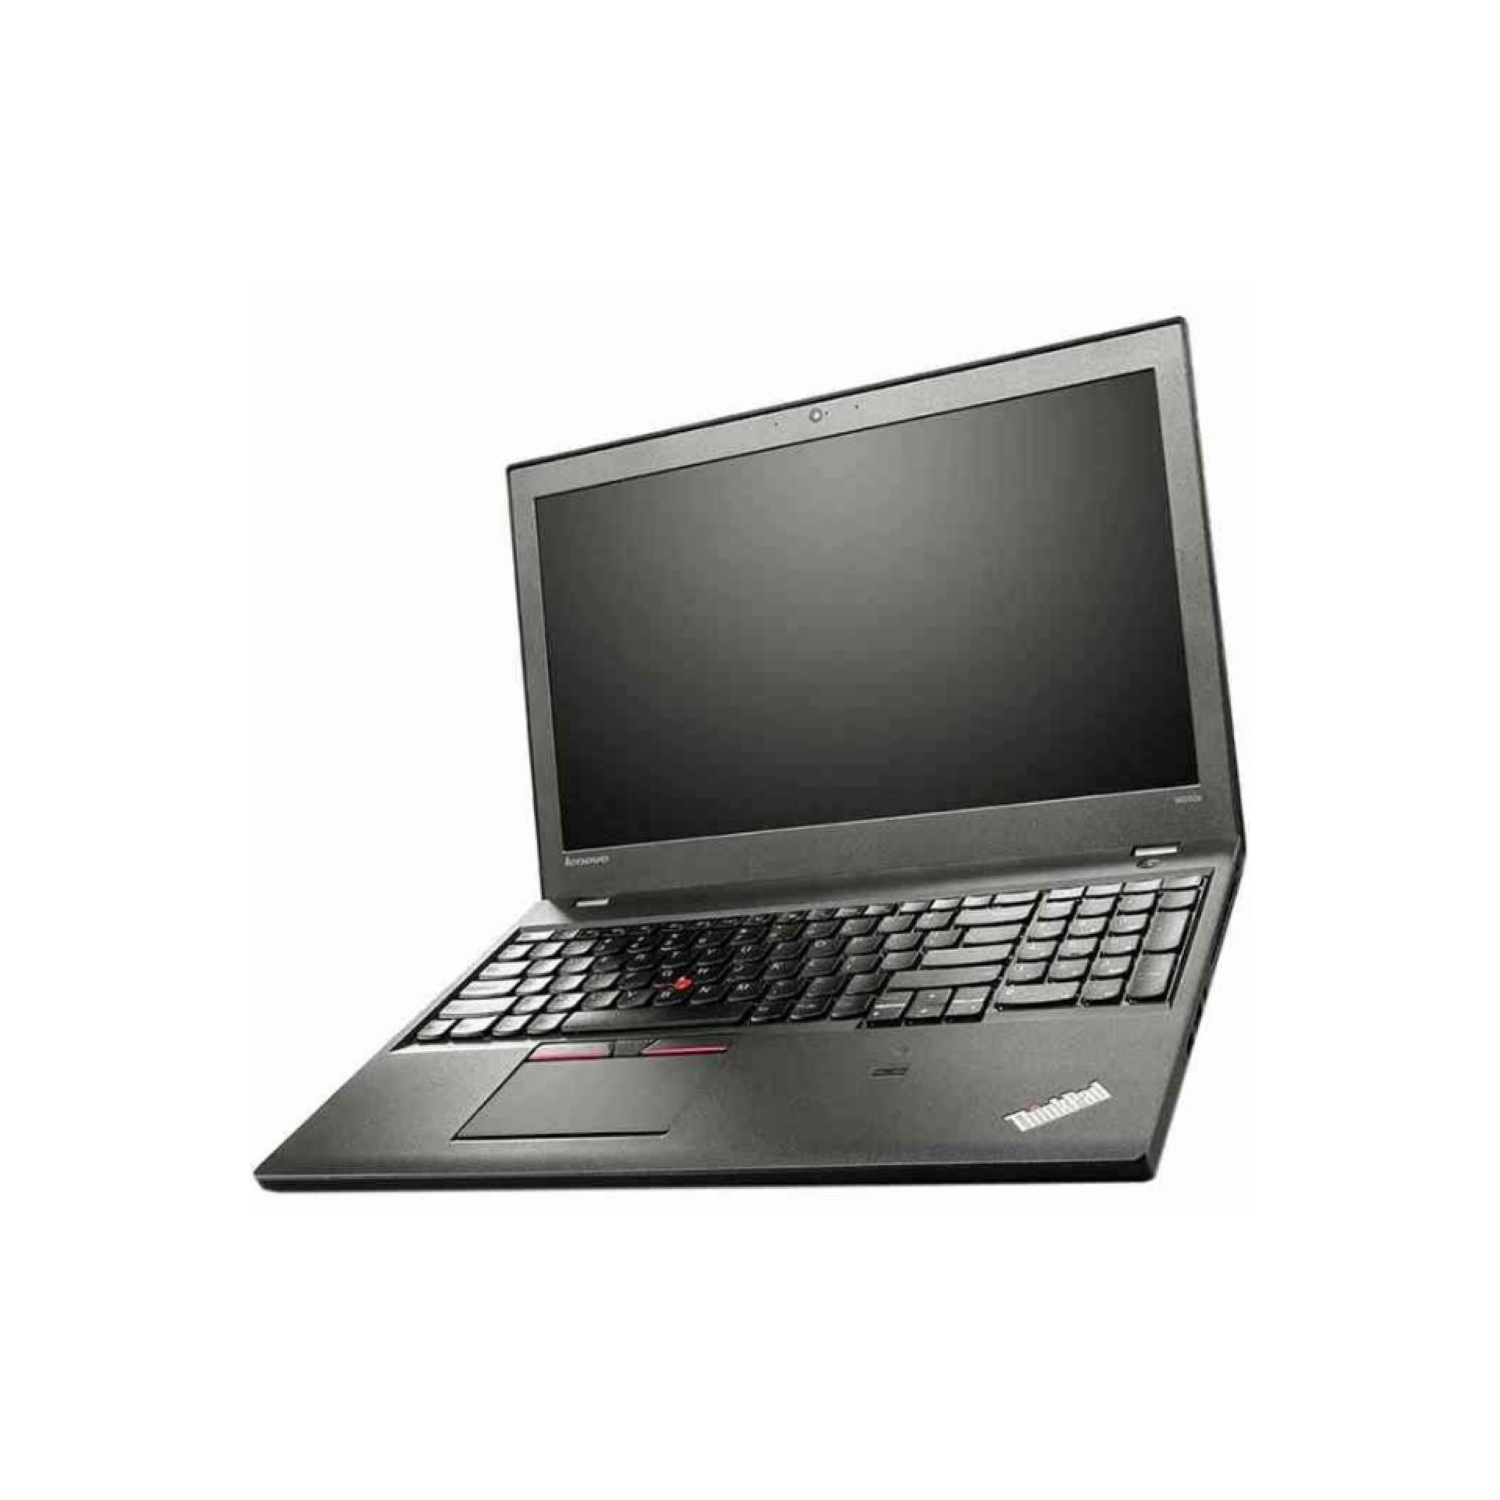 Refurbished (Good) - Lenovo ThinkPad W550s Laptop Intel Quad Core i7-5500U 2.4GHz, 32GB, 512GB SSD, Dedicated NVIDIA K620M 2G Graphics, 15.6" IPS 1920x1080 Full HD TFT, Win 10 PRO